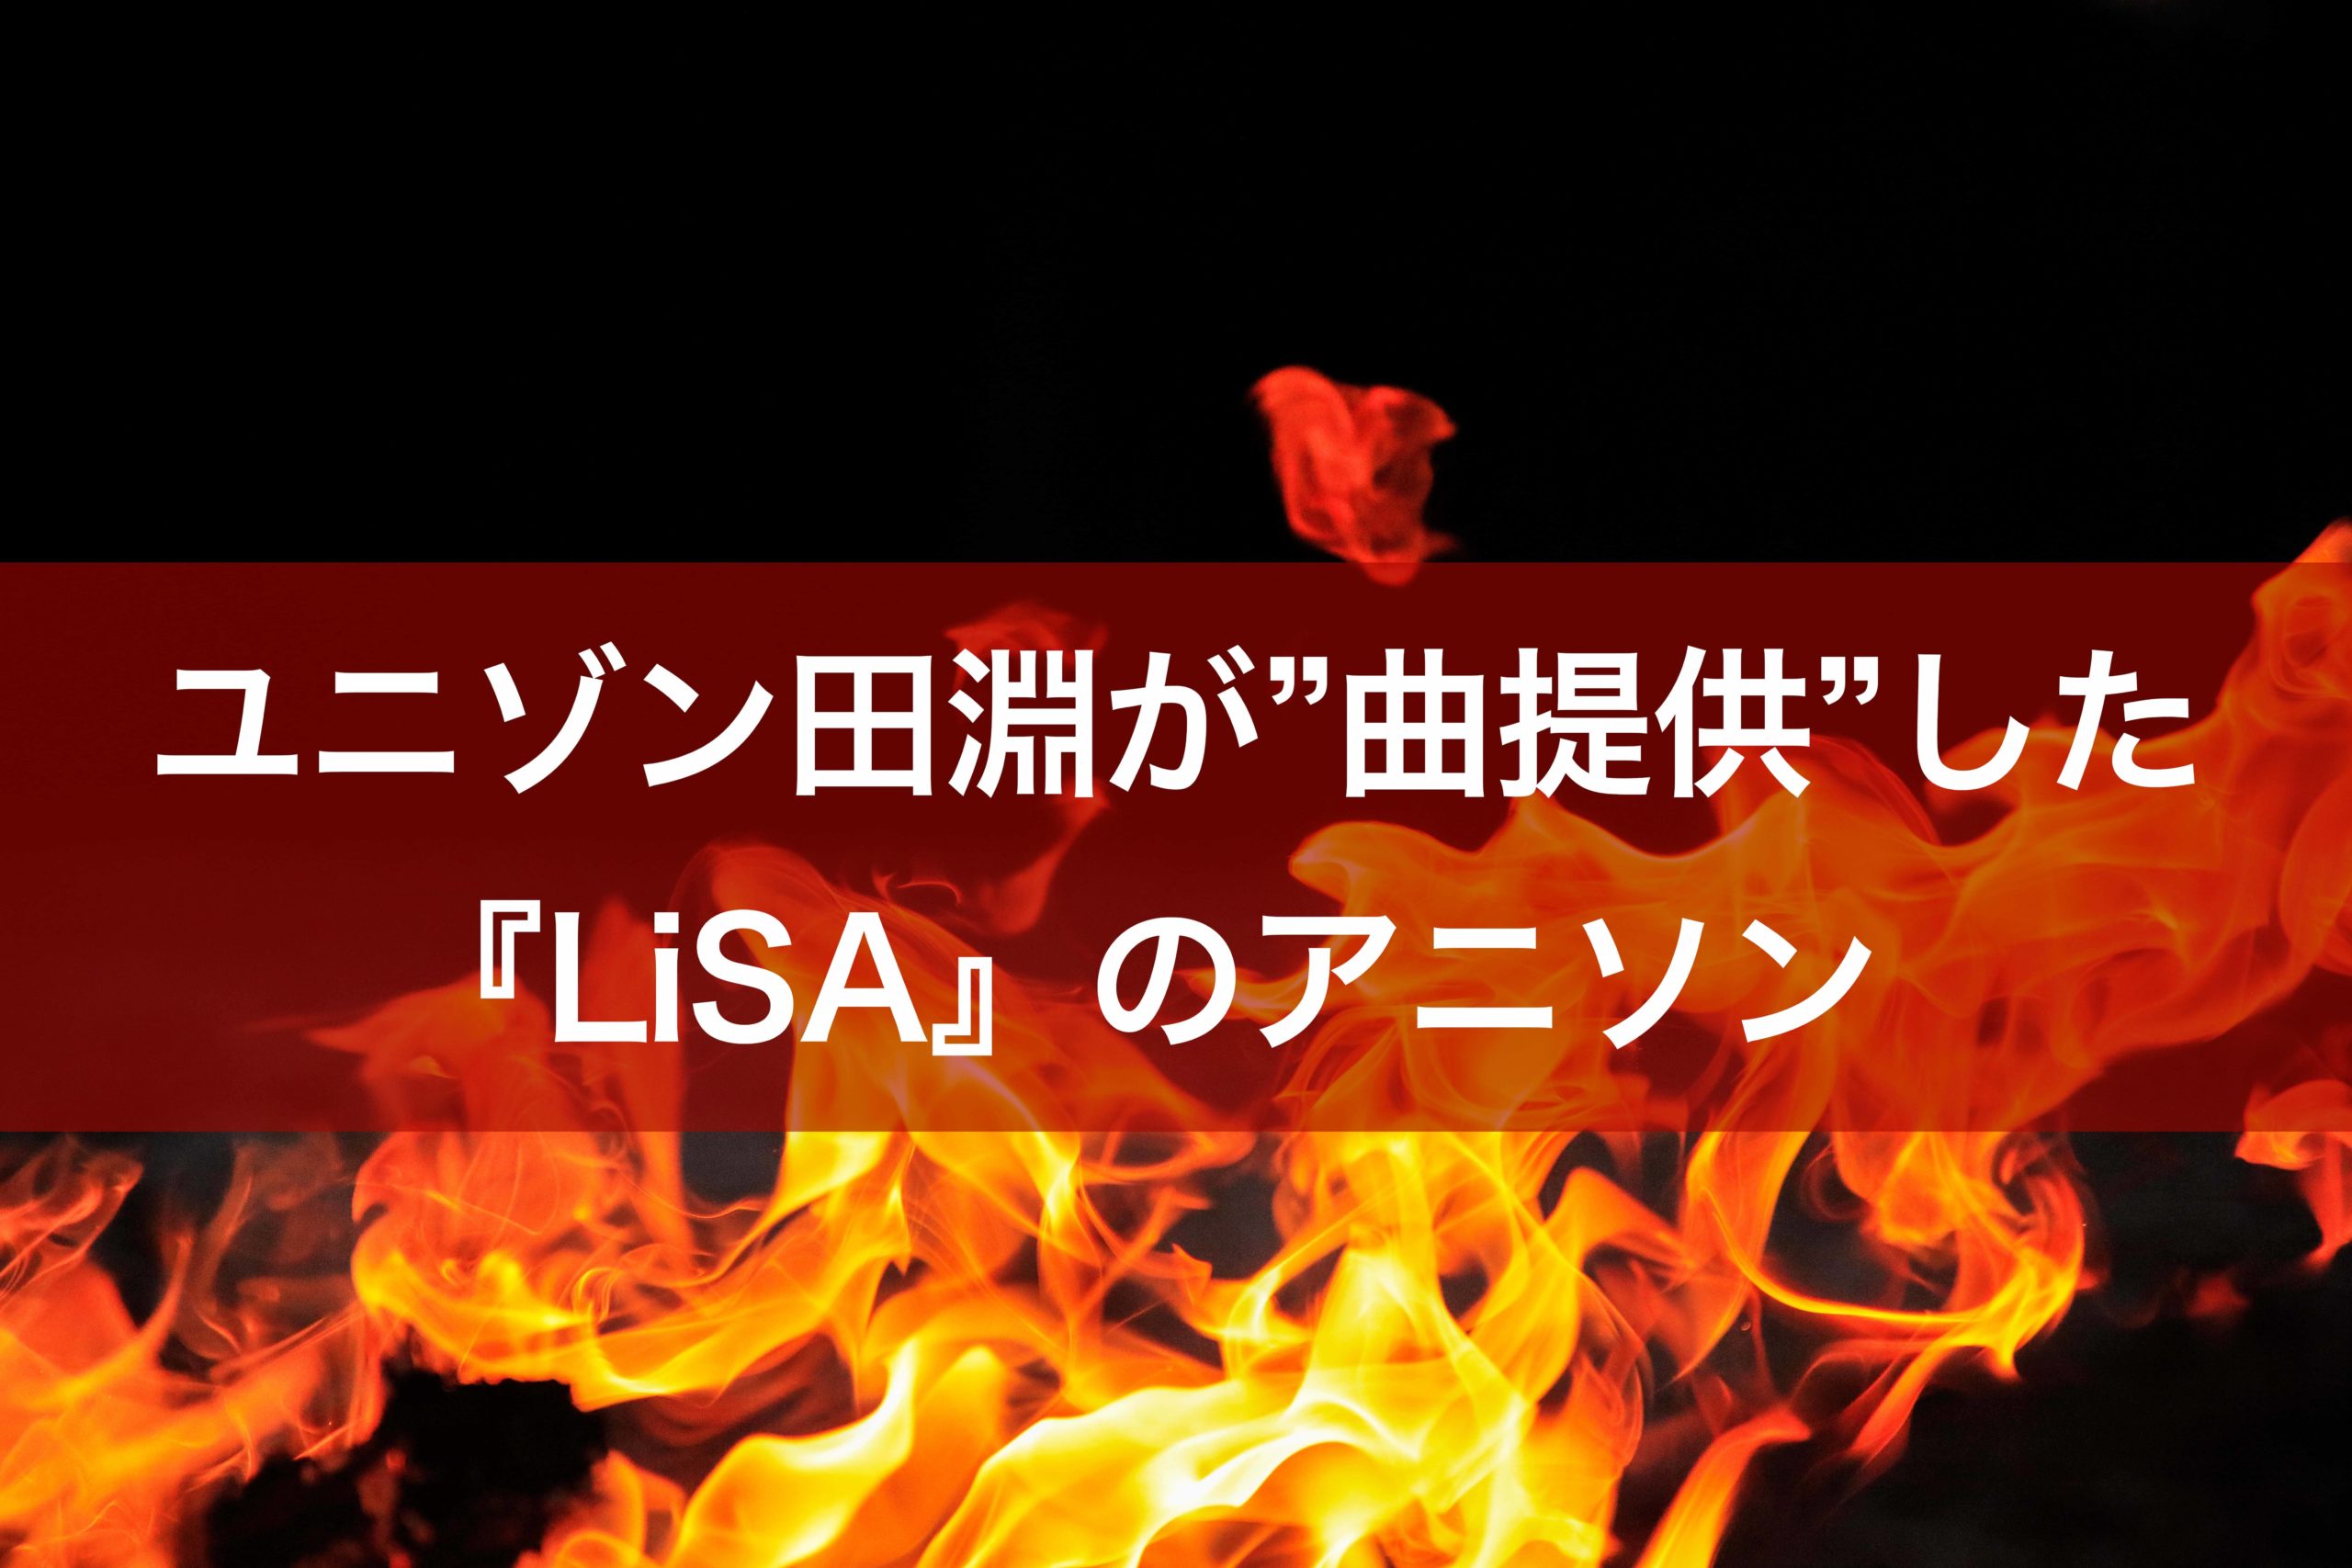 ユニゾン田淵が 楽曲提供 した Lisa の名曲 超人気アニメ の曲も田淵作曲 ななつ色